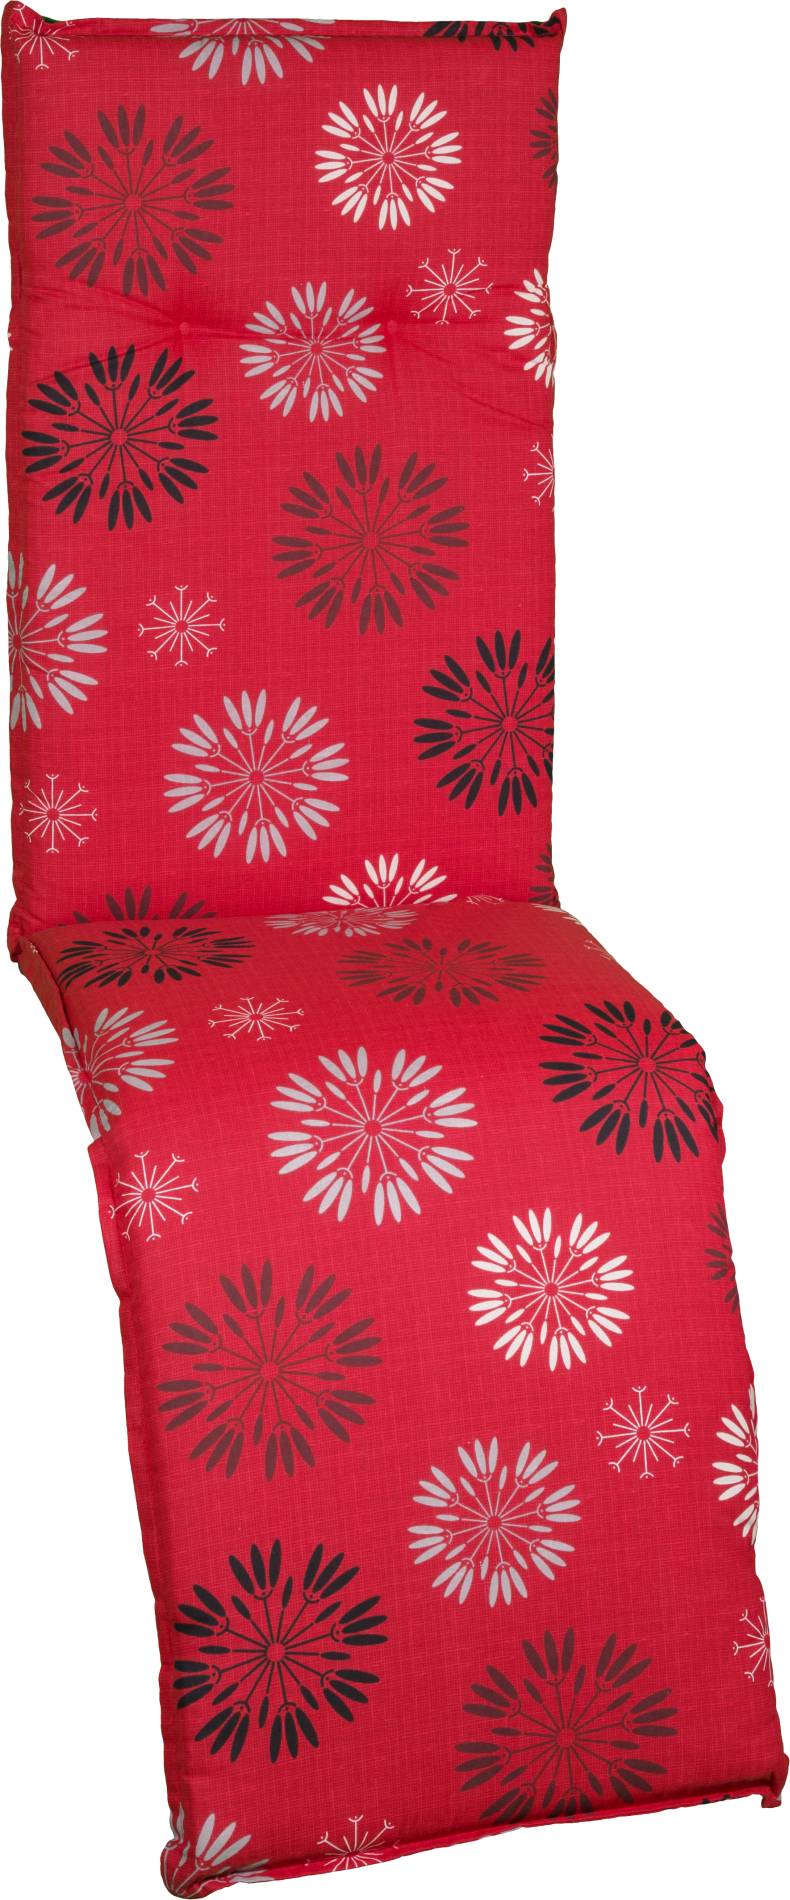 Gartenstuhlauflage für Relaxstuhl in rot mit floralem Pusteblumen-Muster